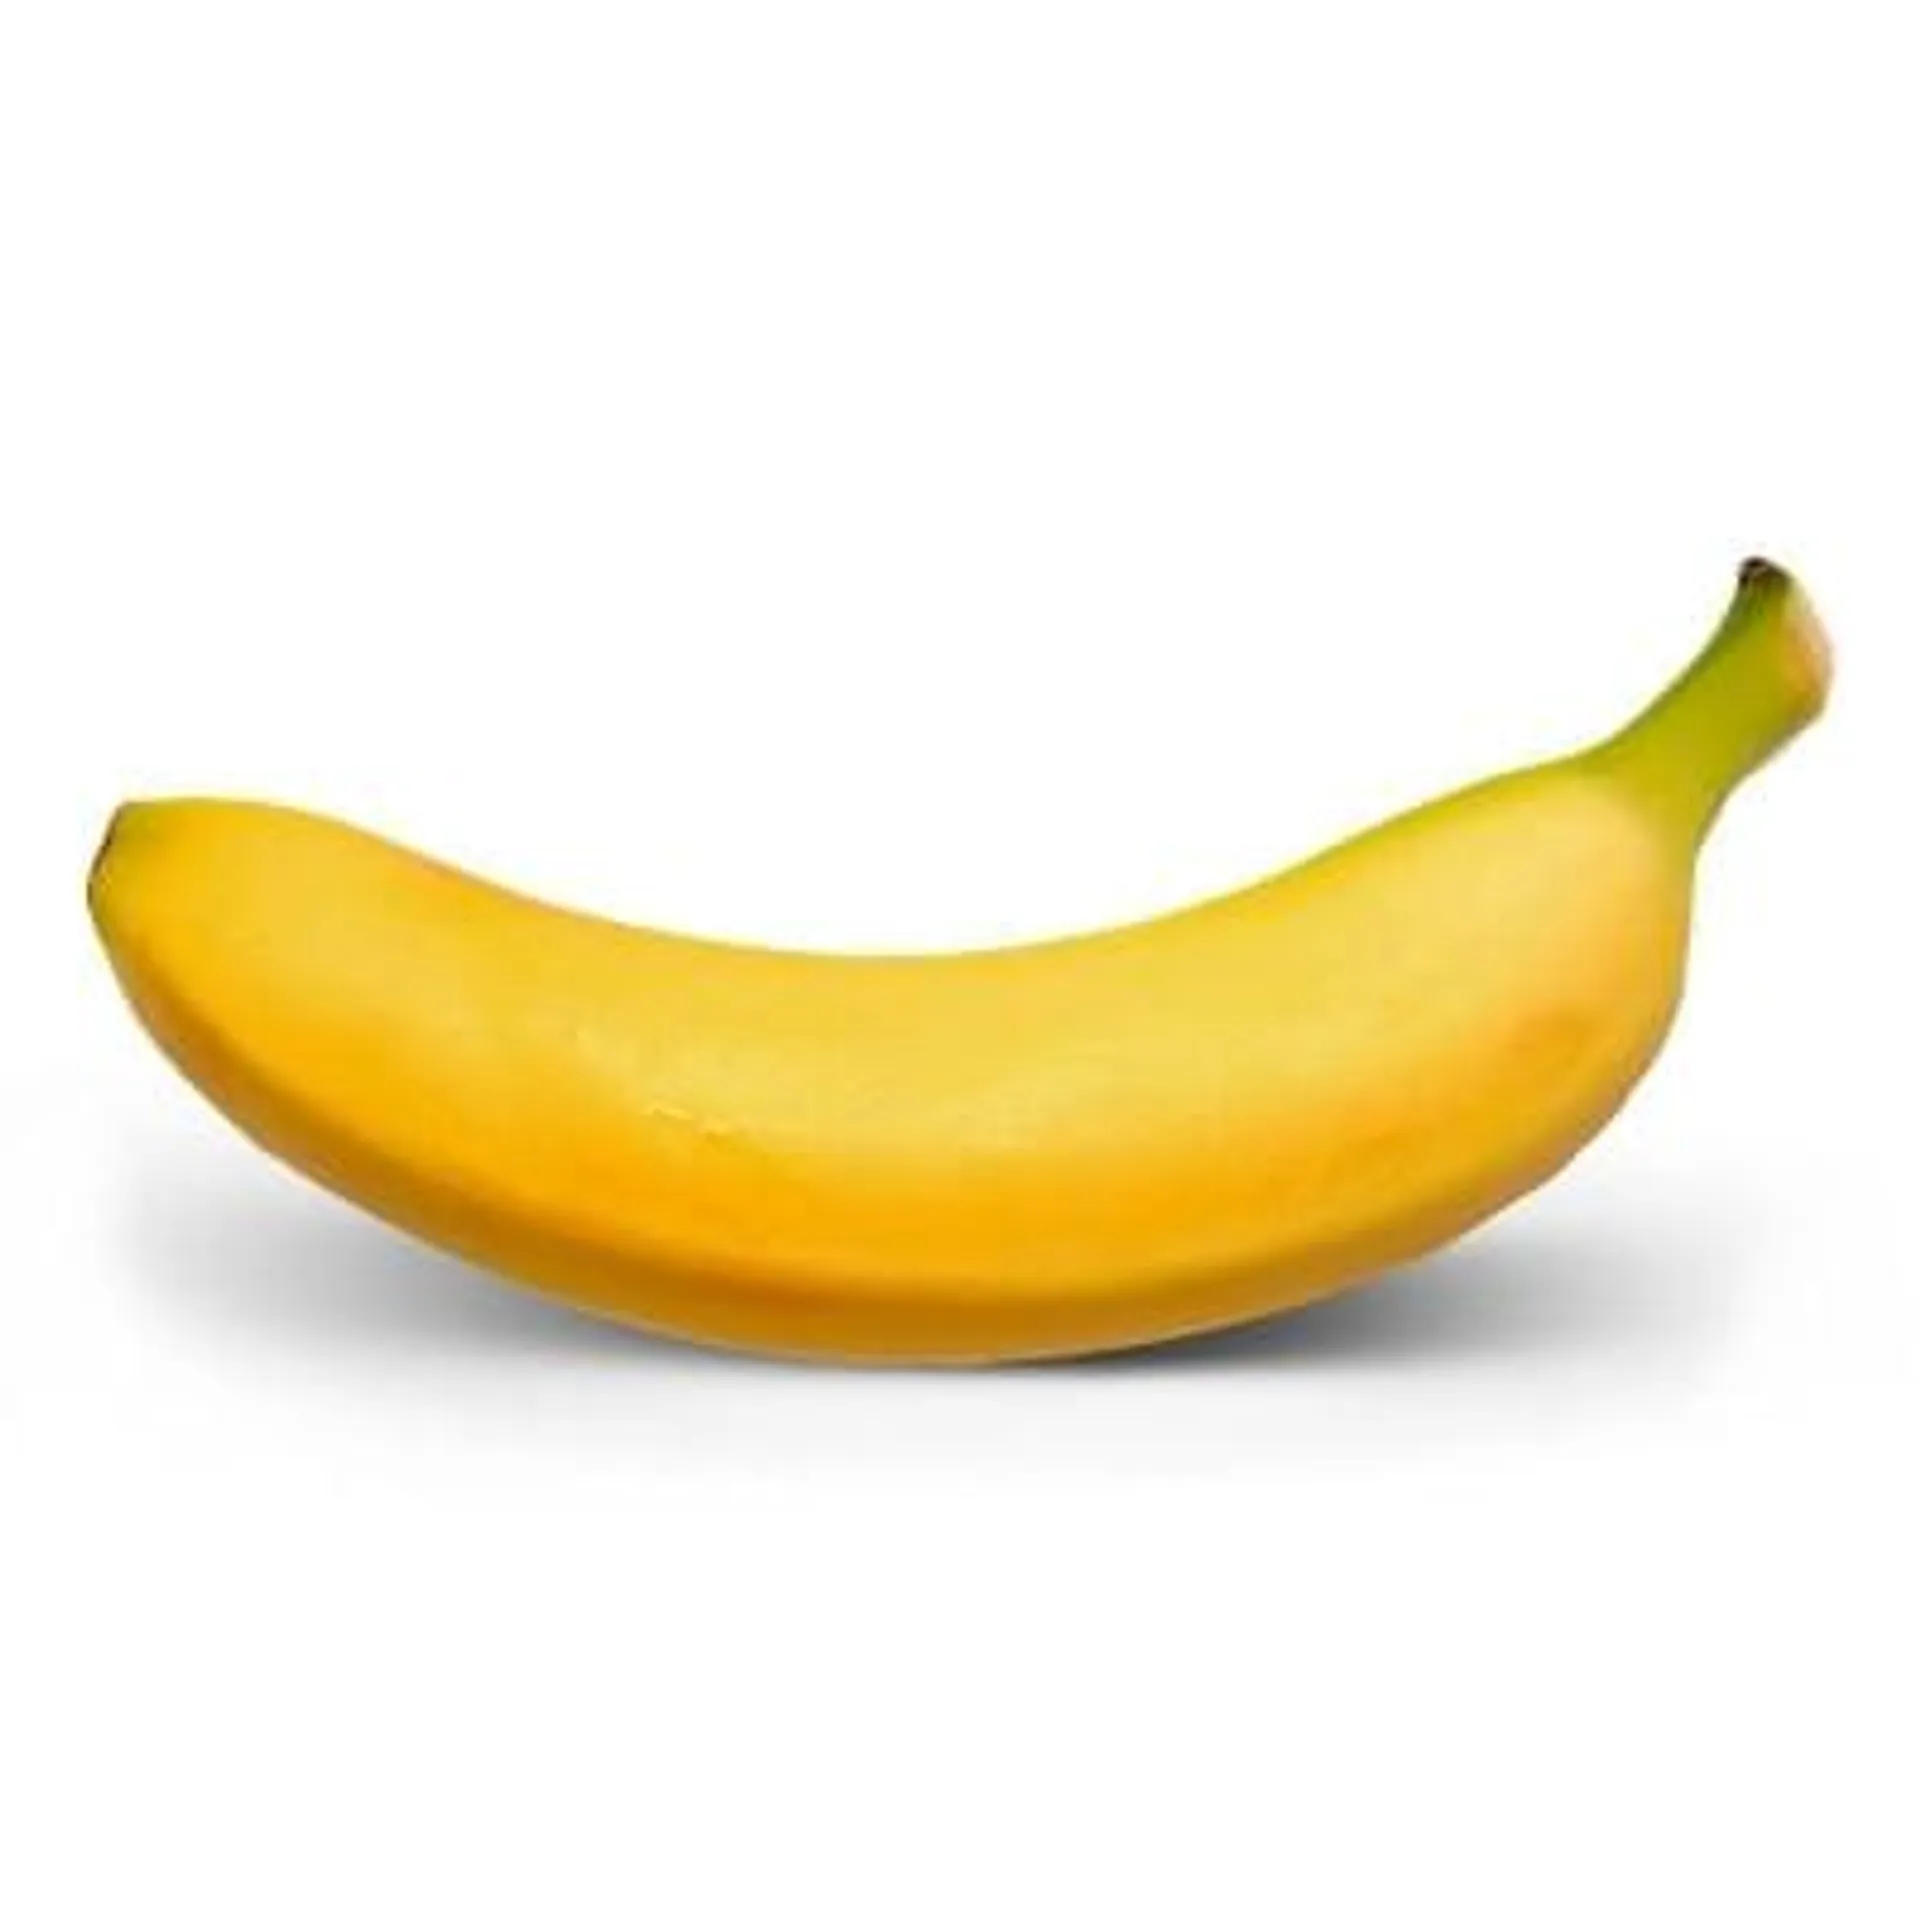 Banana Prata 1 Unidade Aprox. 150g